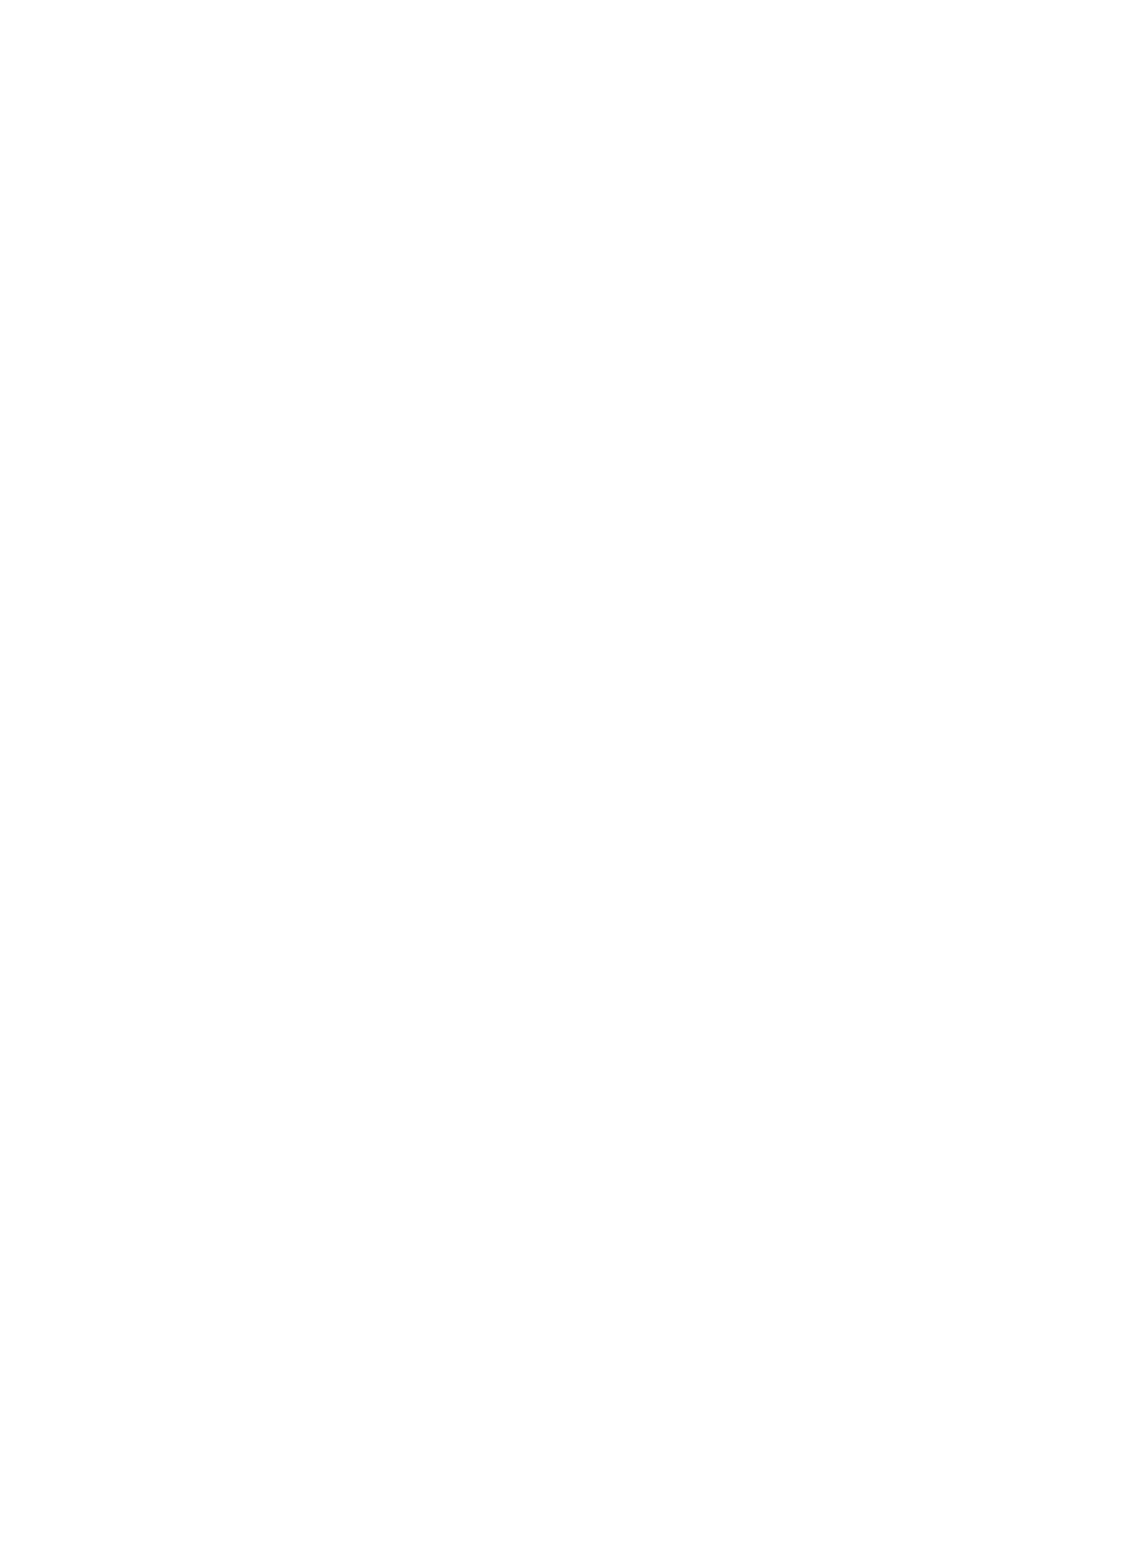 Sabesp logo large for dark backgrounds (transparent PNG)